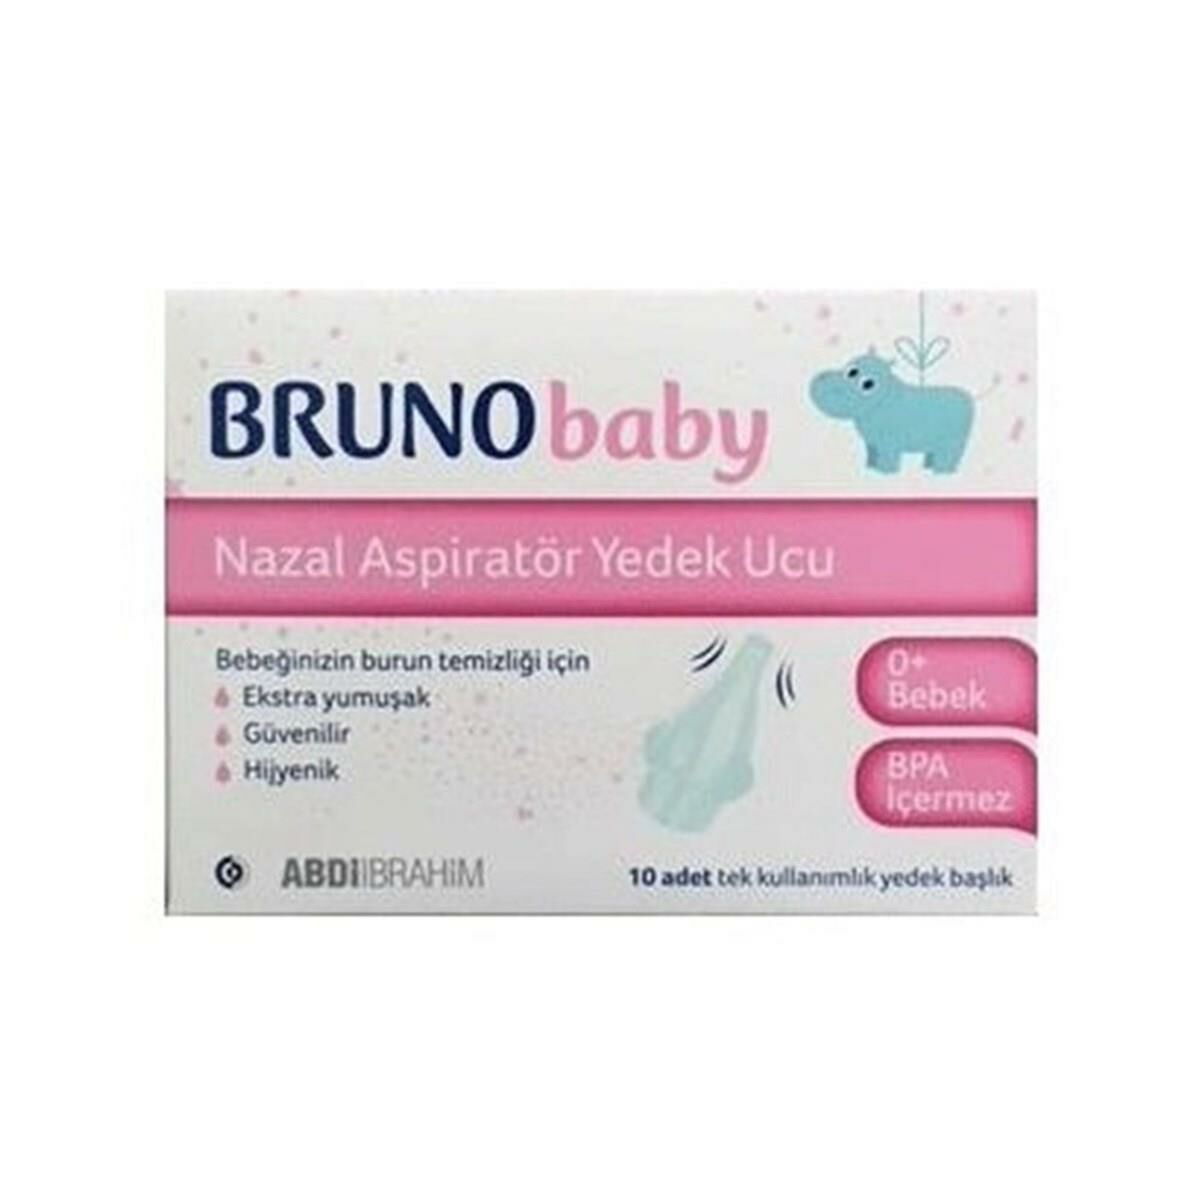 Bruno Baby 10 Yedek Uç